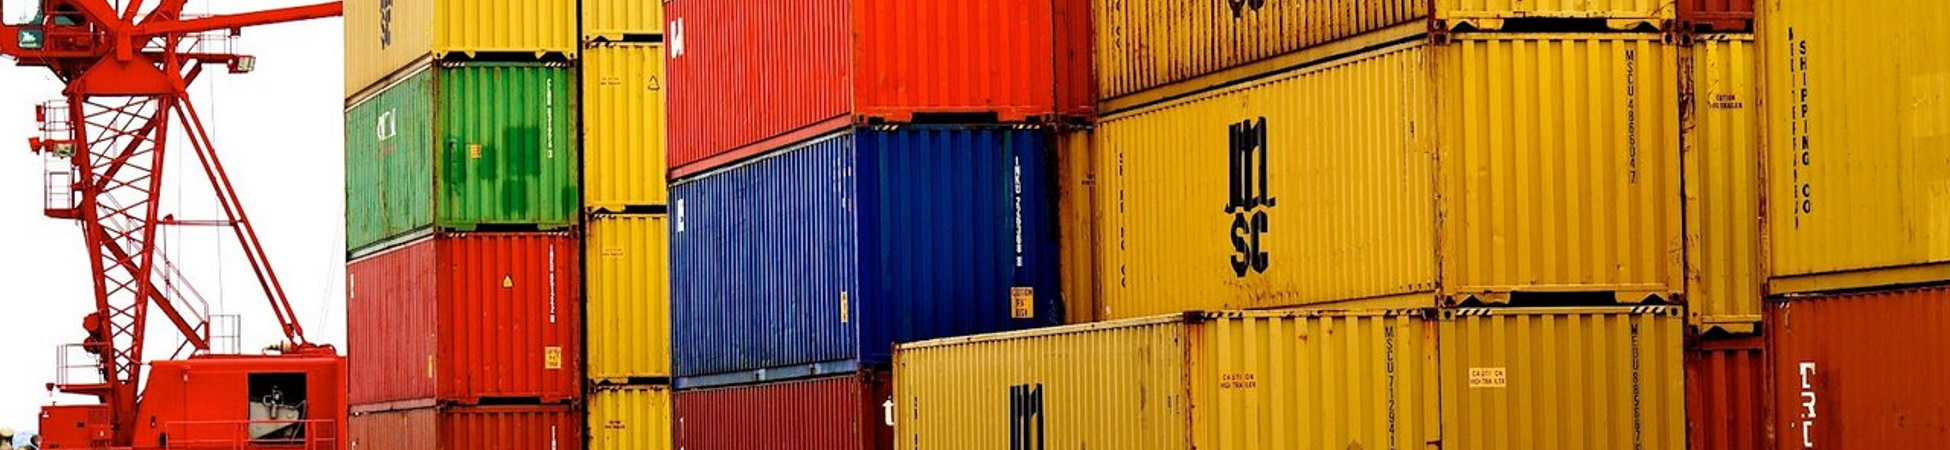 Дефицит пустых контейнеров в Китае